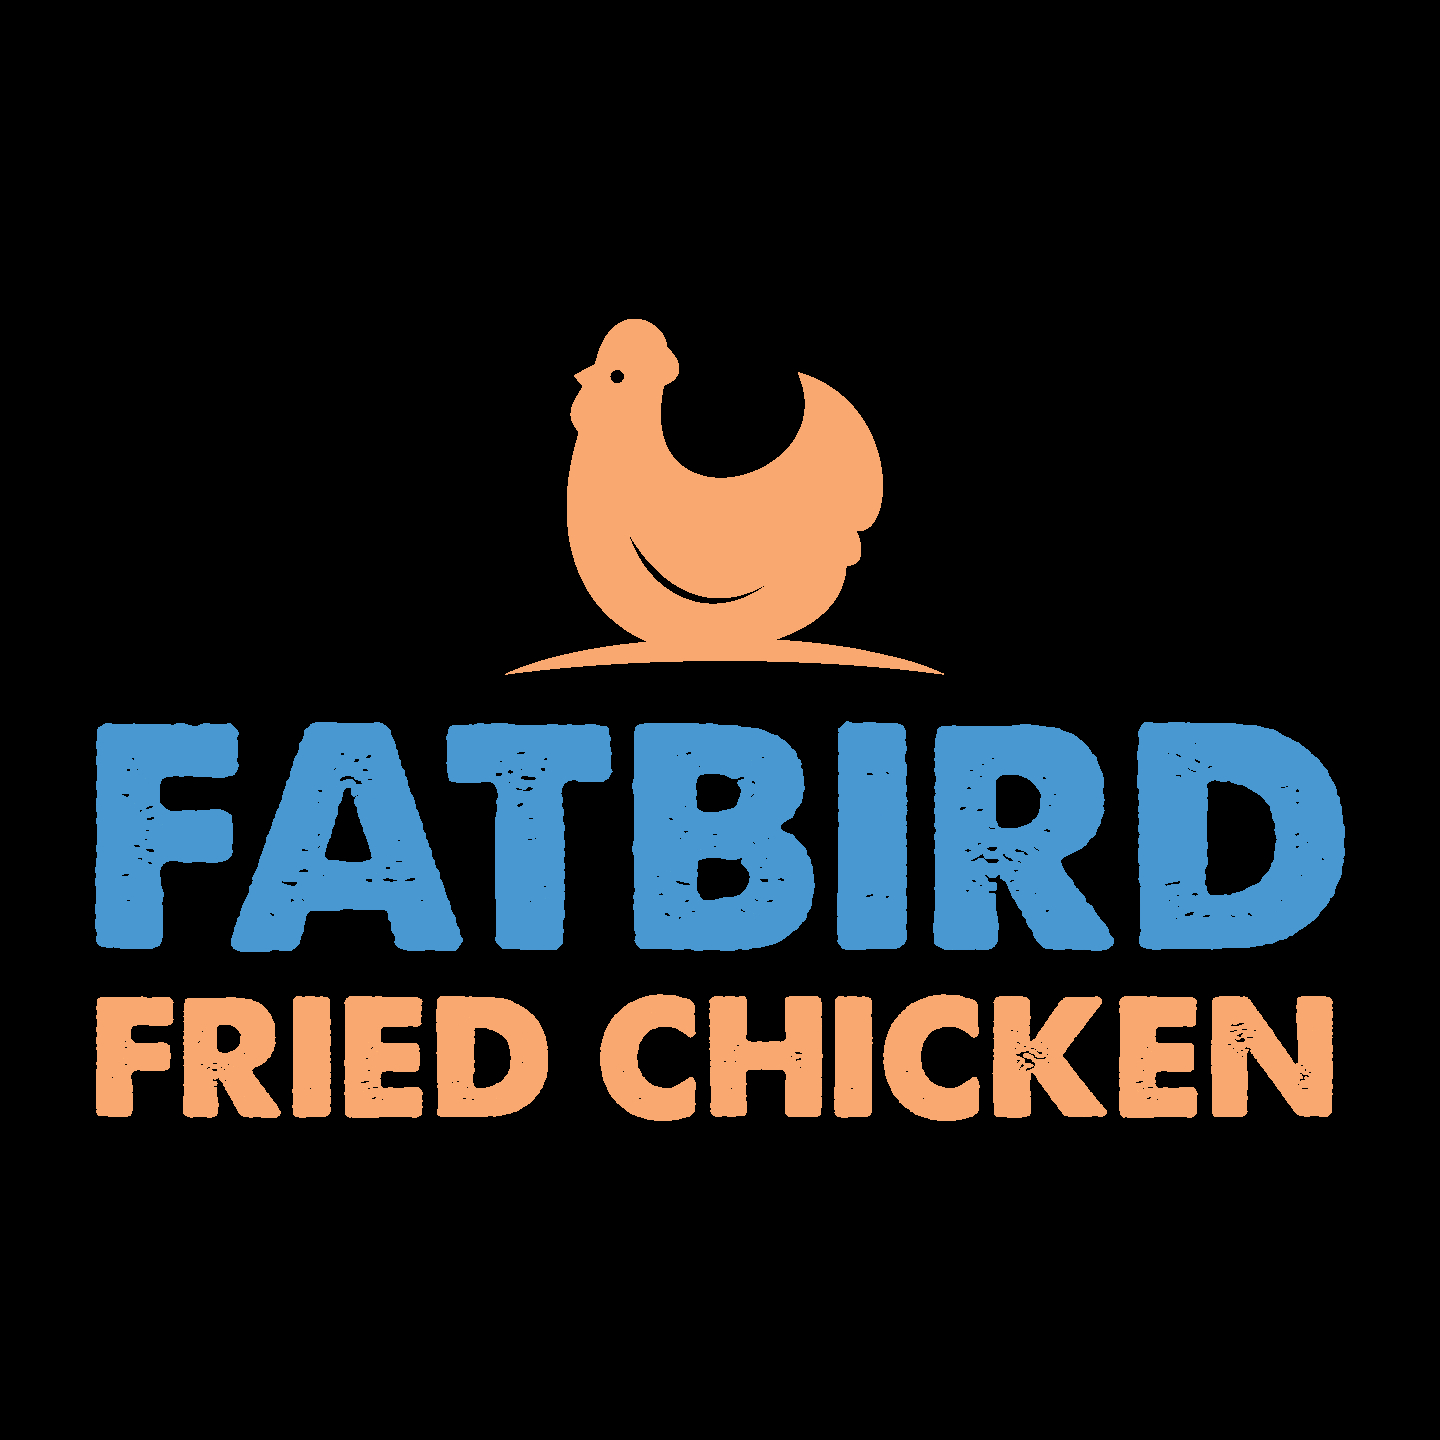 Fatbird Fried Chicken - Rotisseries & Chicken Restaurants